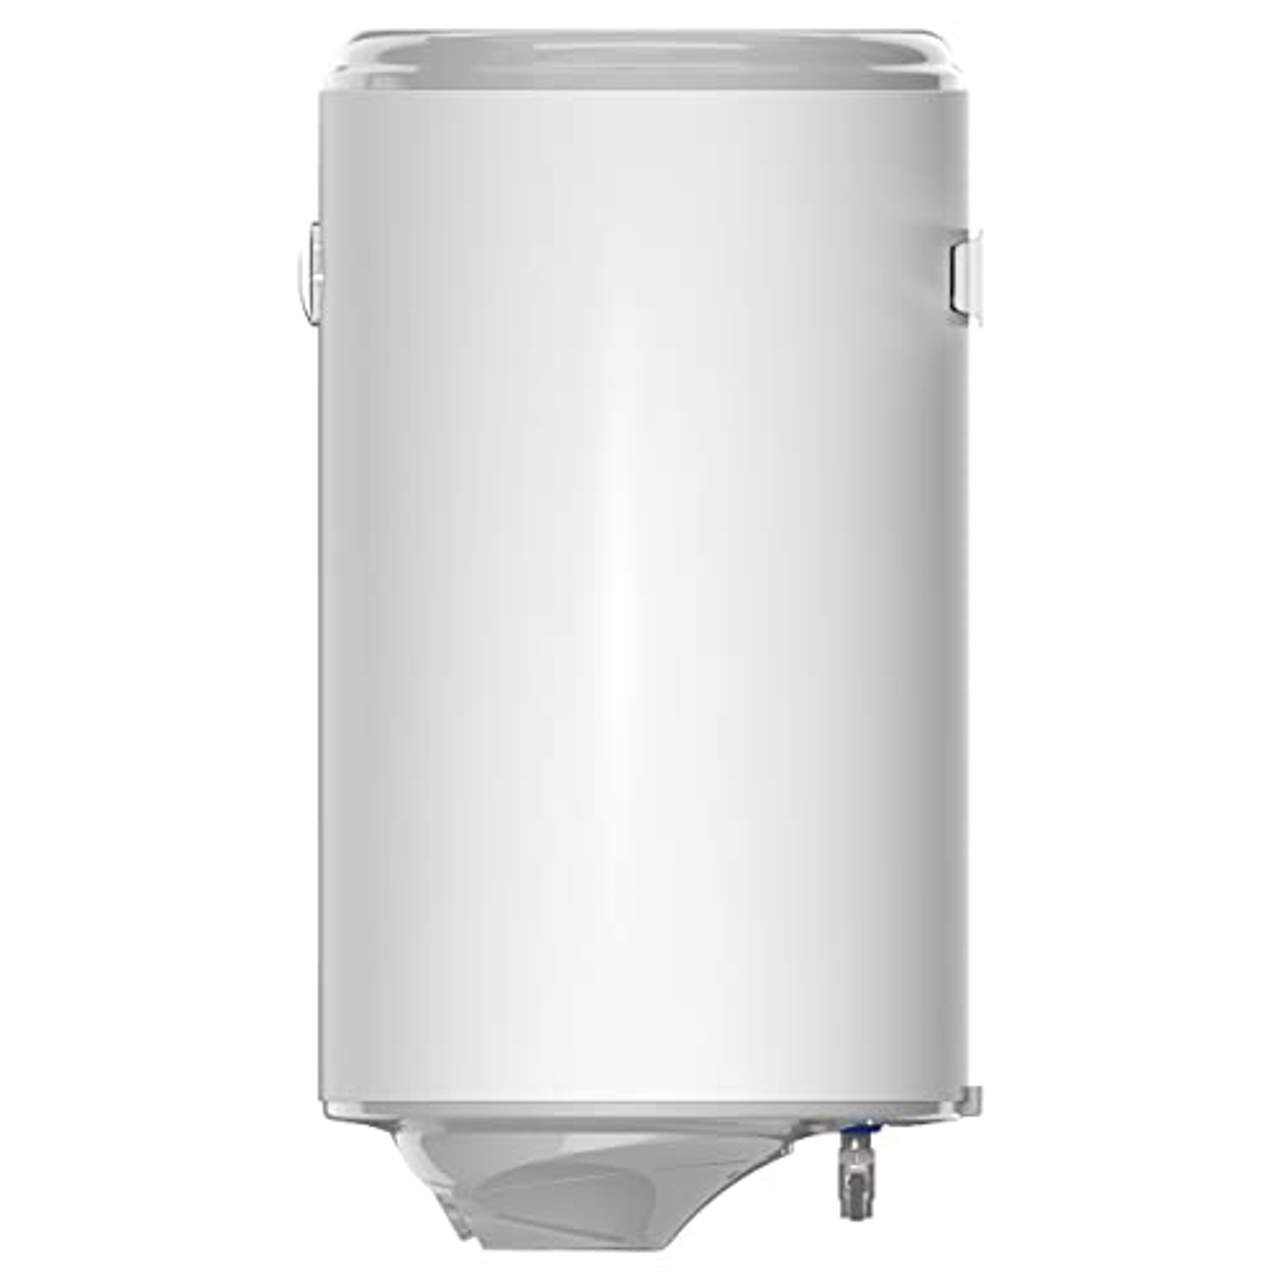 Warmwasserspeicher Warmwasserboiler Eldom Style 80L druckfest